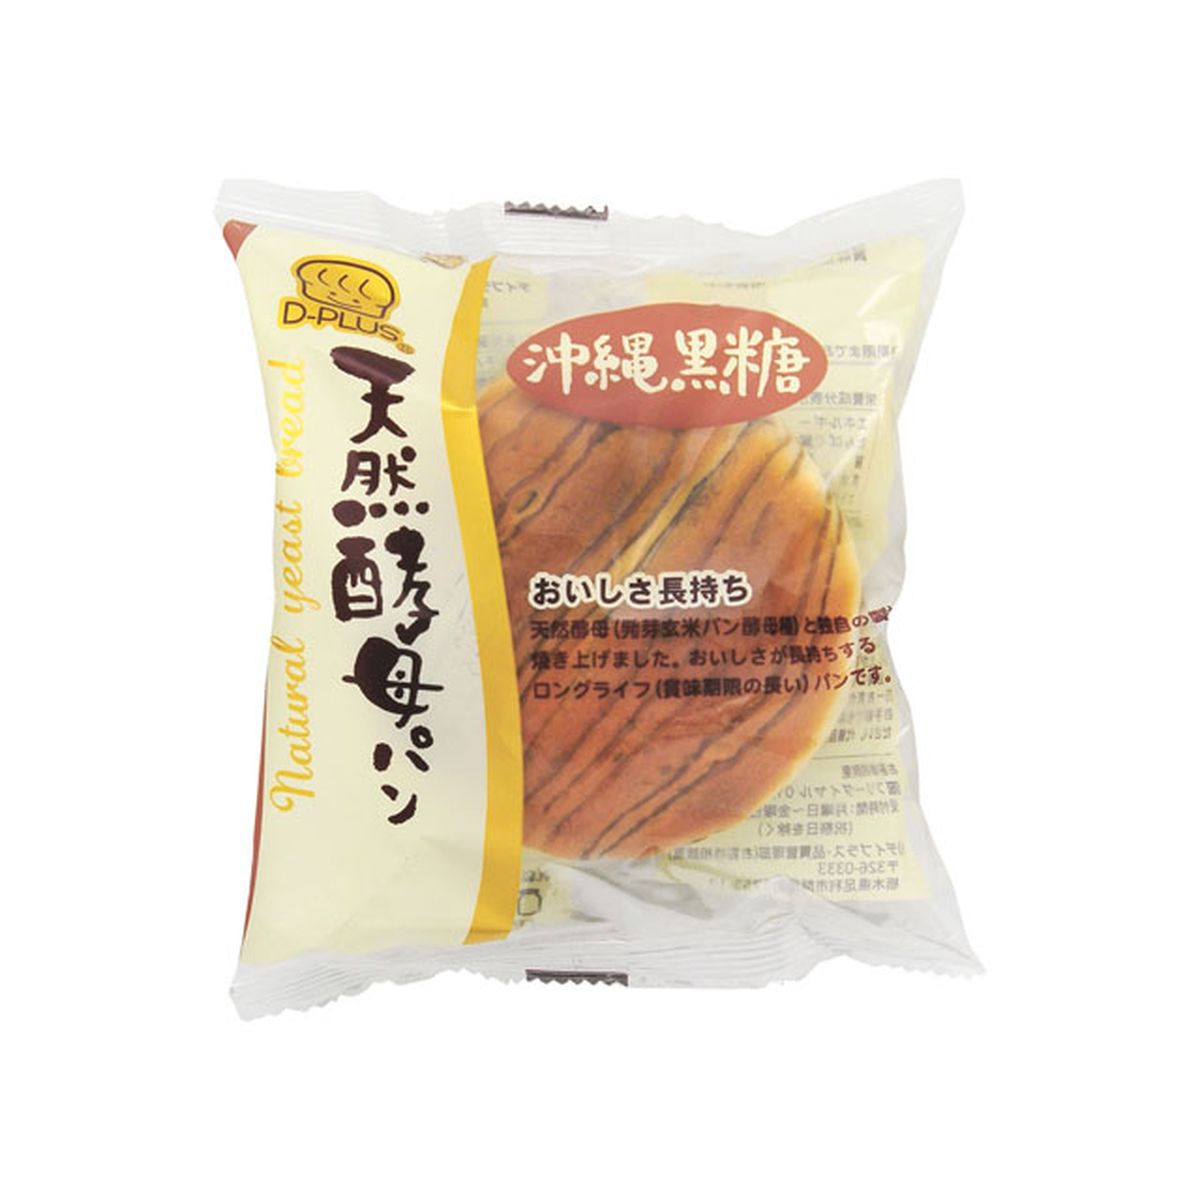 【12個入り】デイプラス 天然酵母パン 沖縄黒糖 1個